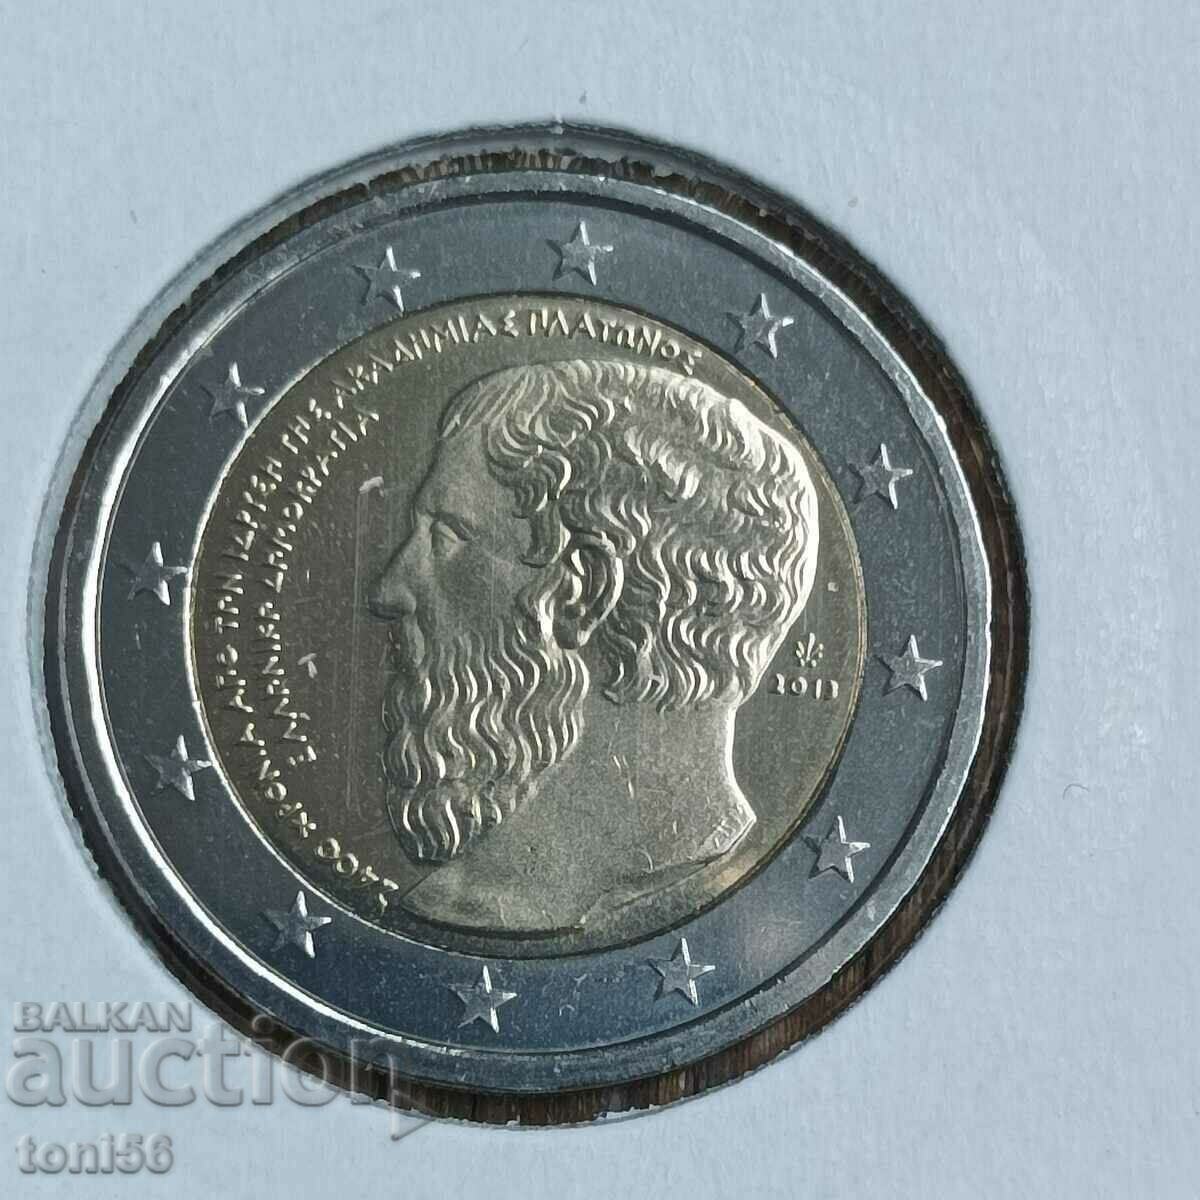 Гърция 2 евро 2013 - Платон